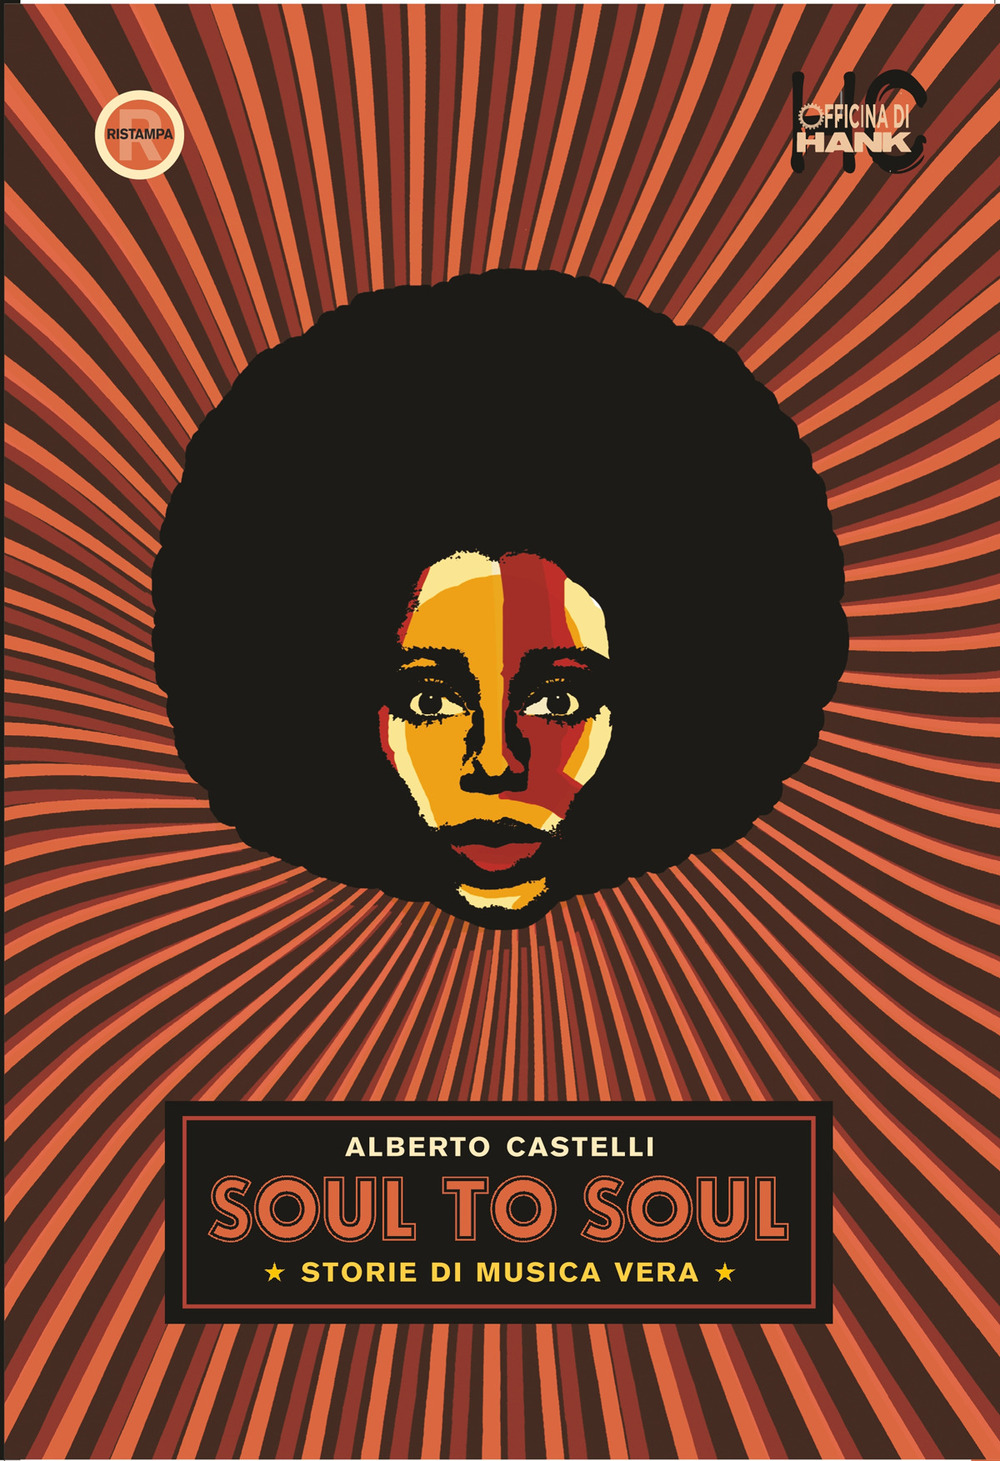 Libri Alberto Castelli - Soul To Soul. Storie Di Musica Vera NUOVO SIGILLATO, EDIZIONE DEL 22/07/2020 SUBITO DISPONIBILE